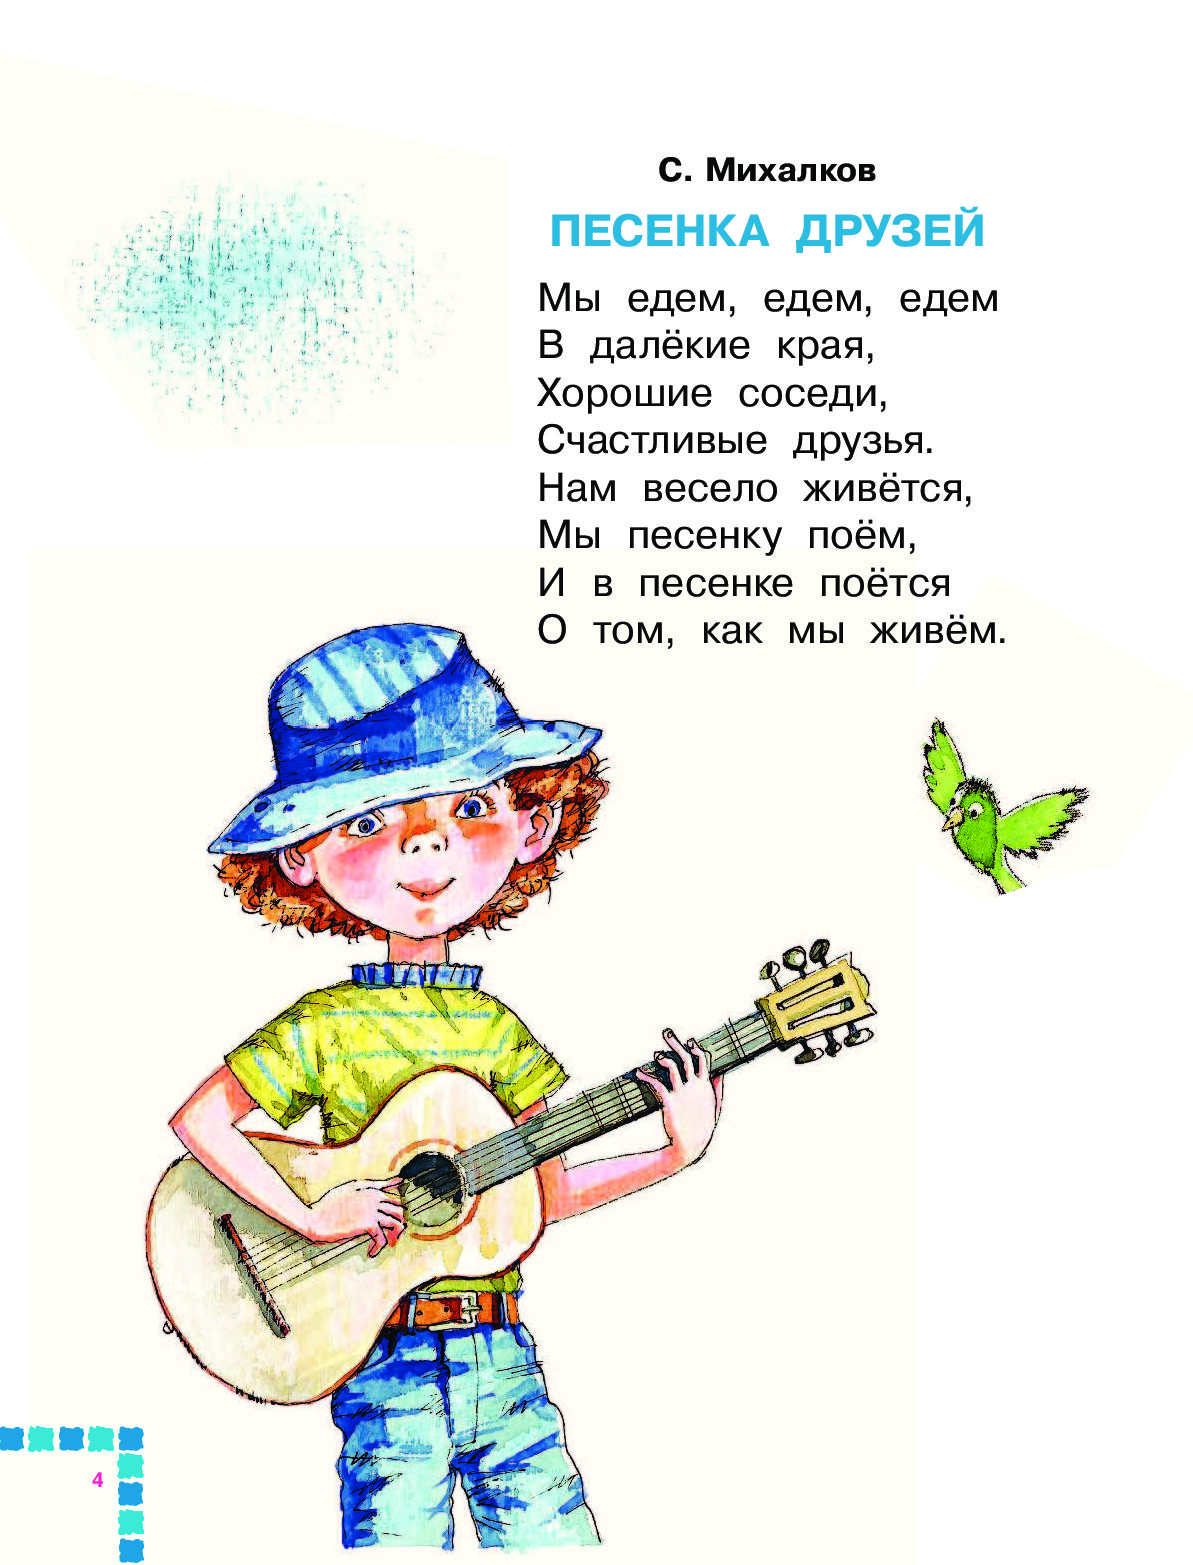 Детские песни петь со словами бесплатно: Лучшие караоке Песен из Мульфильмов петь онлайн бесплатно с баллами